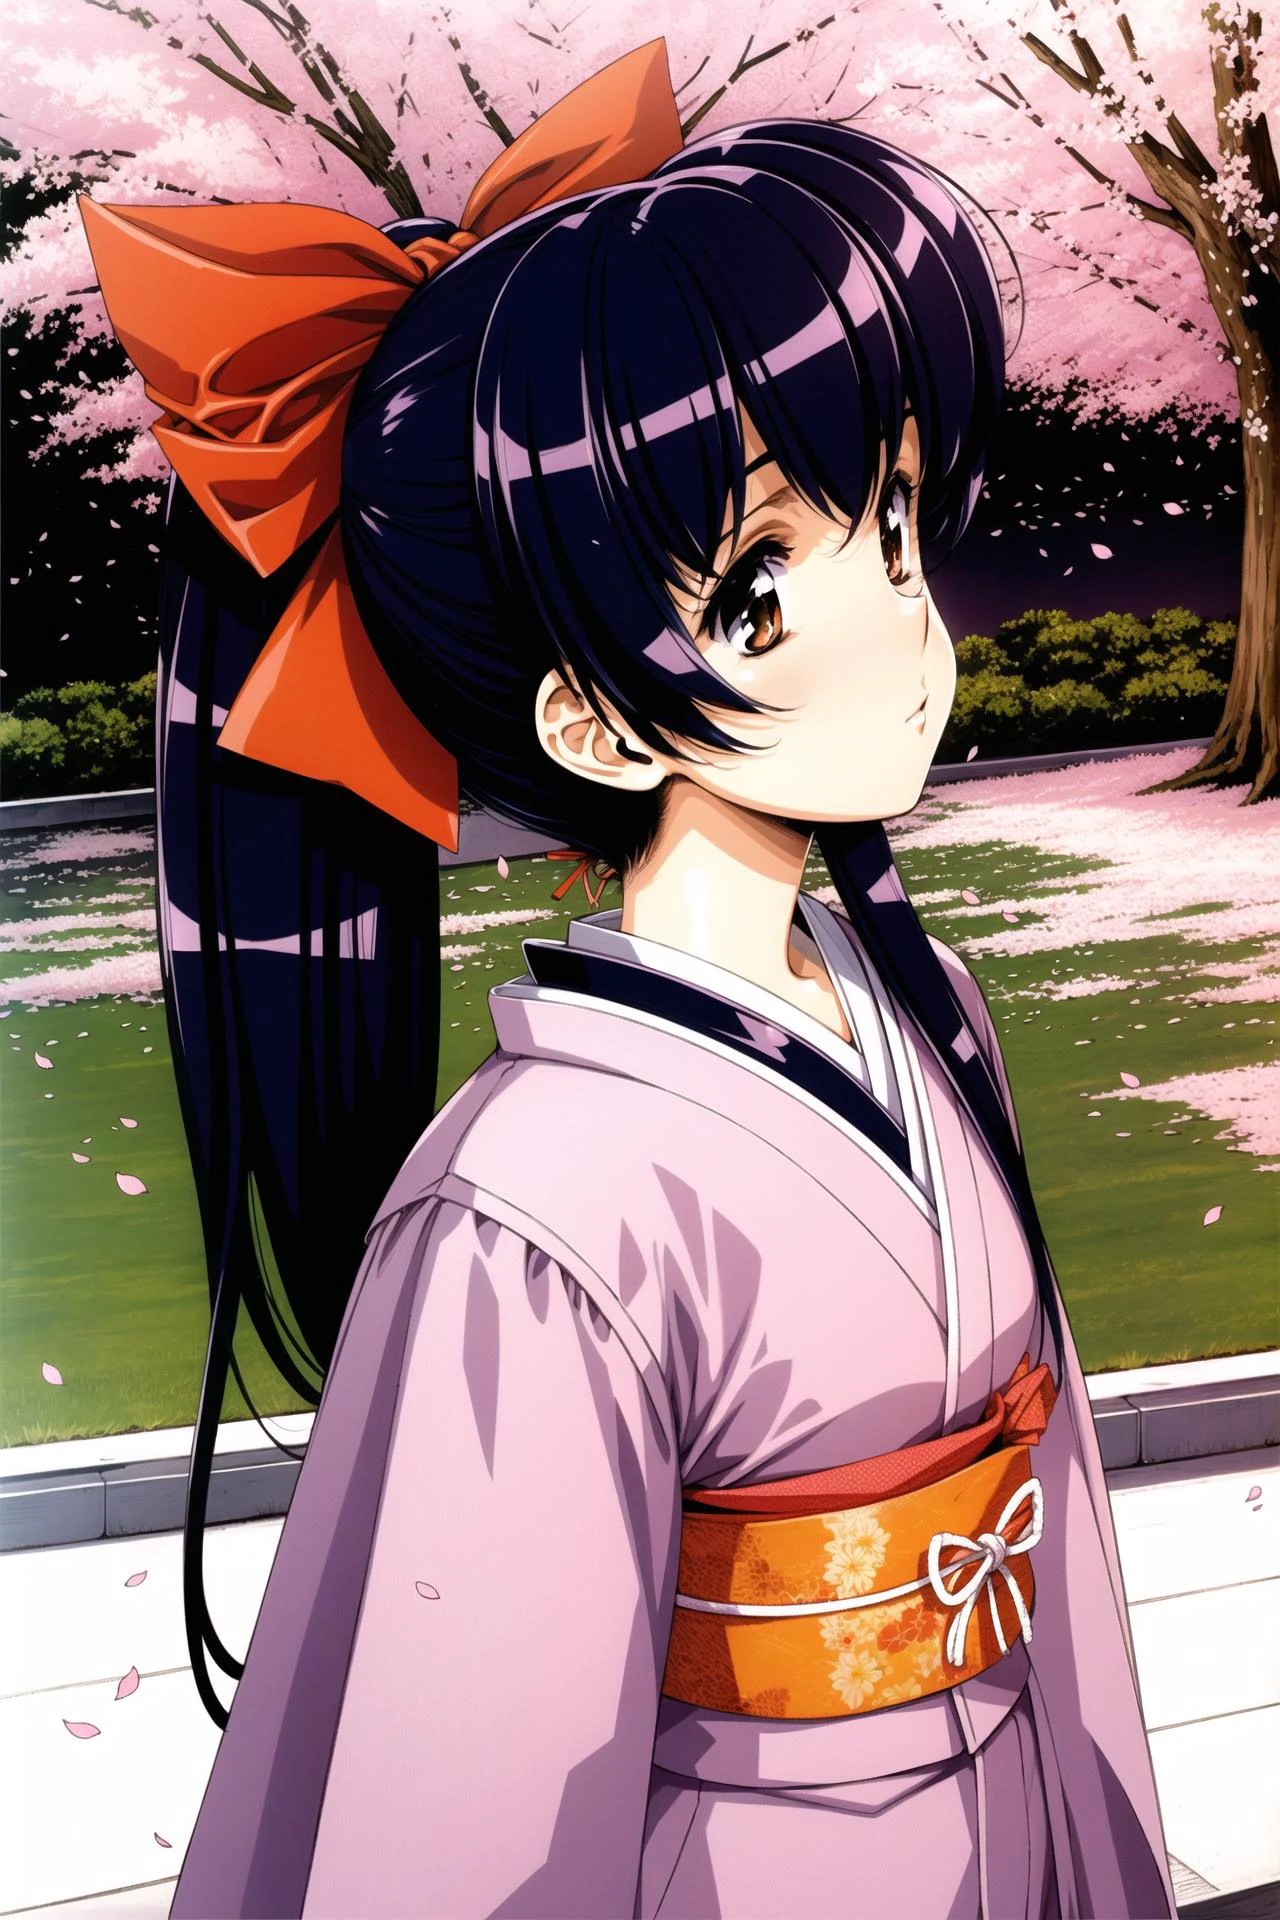 1個女孩, 獨自的, 弓,長髮, red 弓, 日本衣服, 馬尾辮, hair 弓, 棕色的眼睛, 黑髮, 藍頭髮, 櫻花